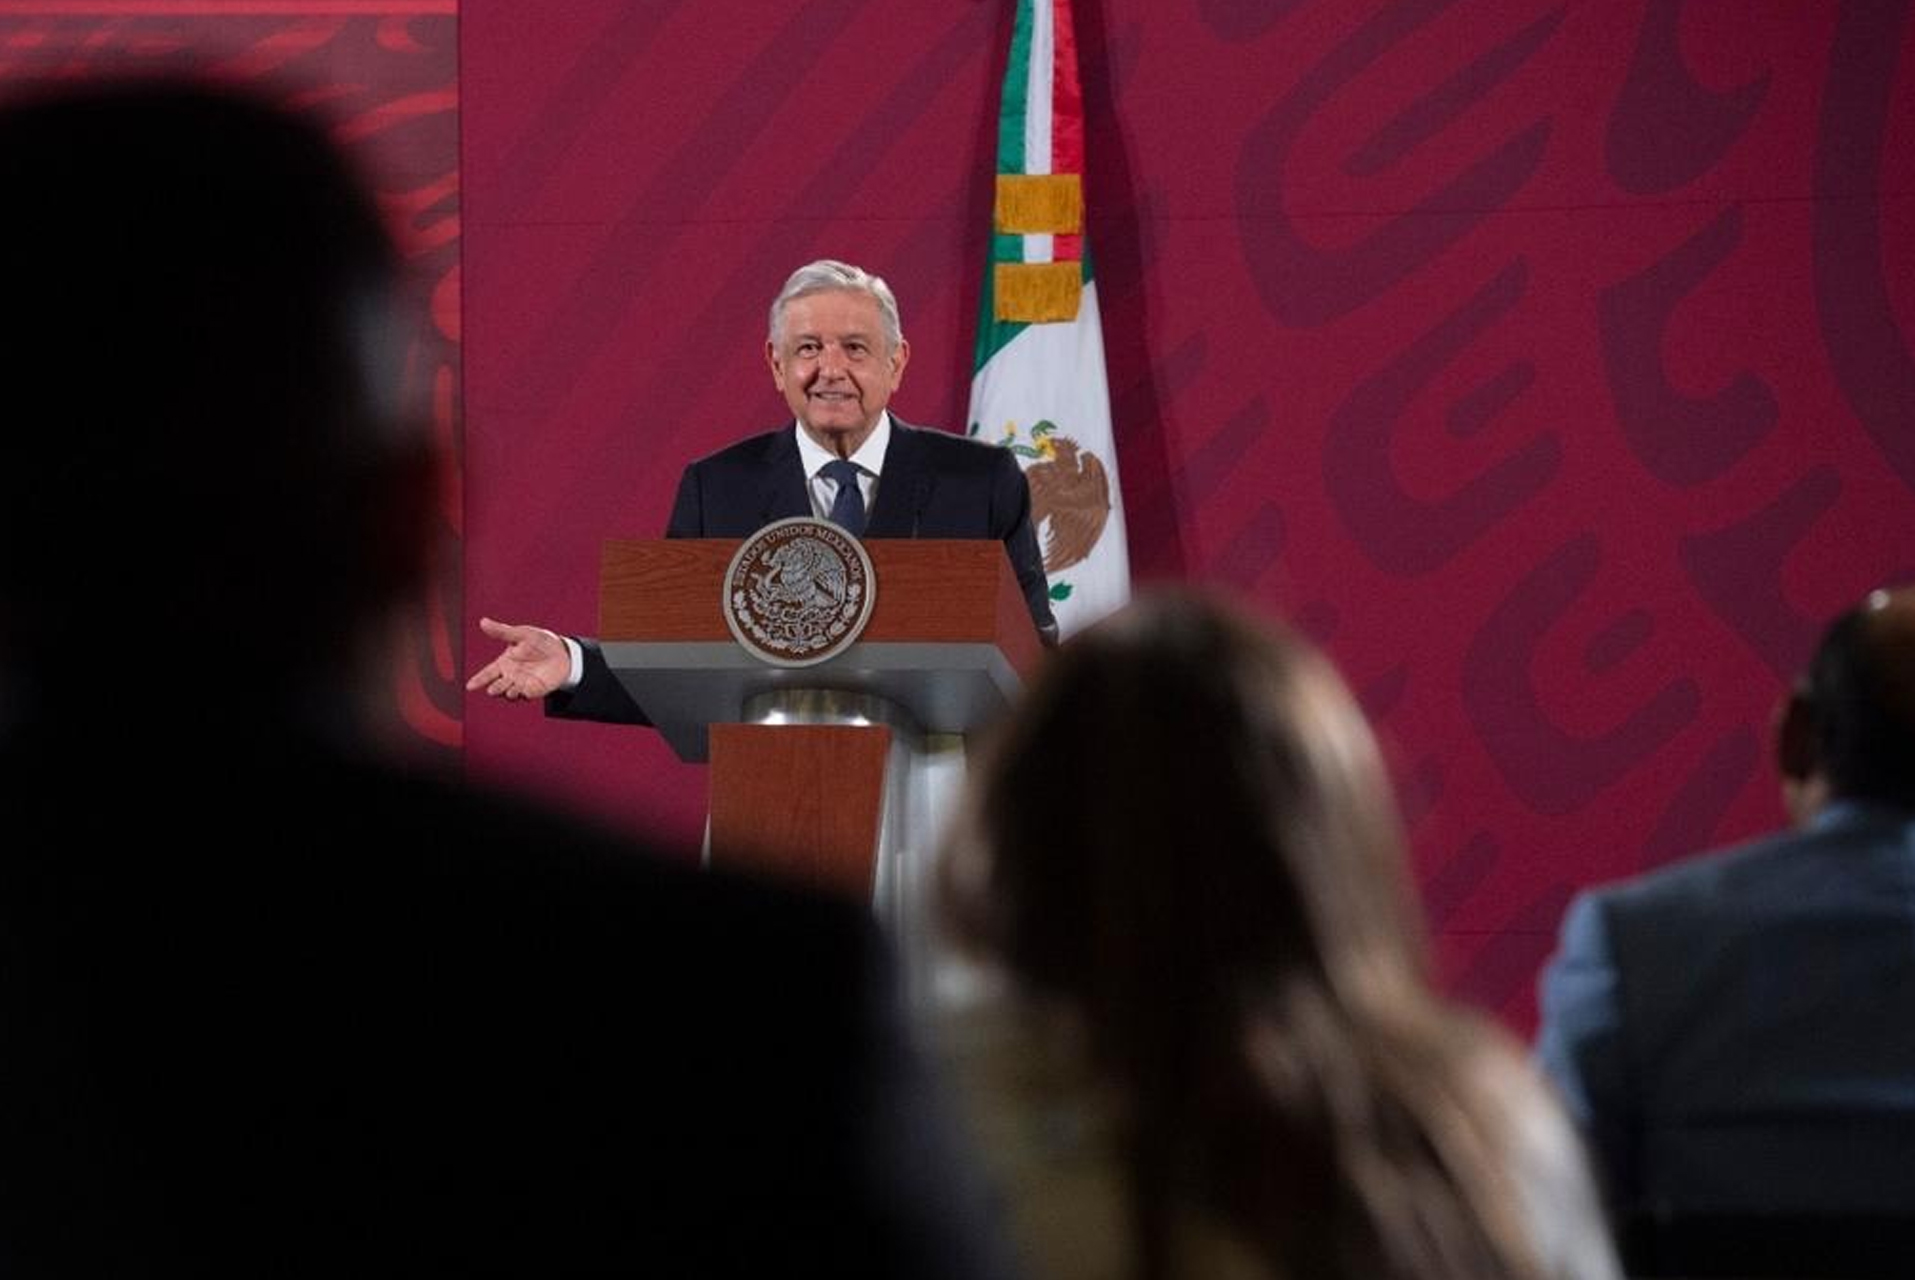 El presidente de México, Andrés Manuel López Obrador, expresó su desacuerdo con la intervención de colectivos de mujeres a la imagen de Francisco I. Madero (Foto: Andrea Murcia/Cuartoscuro)